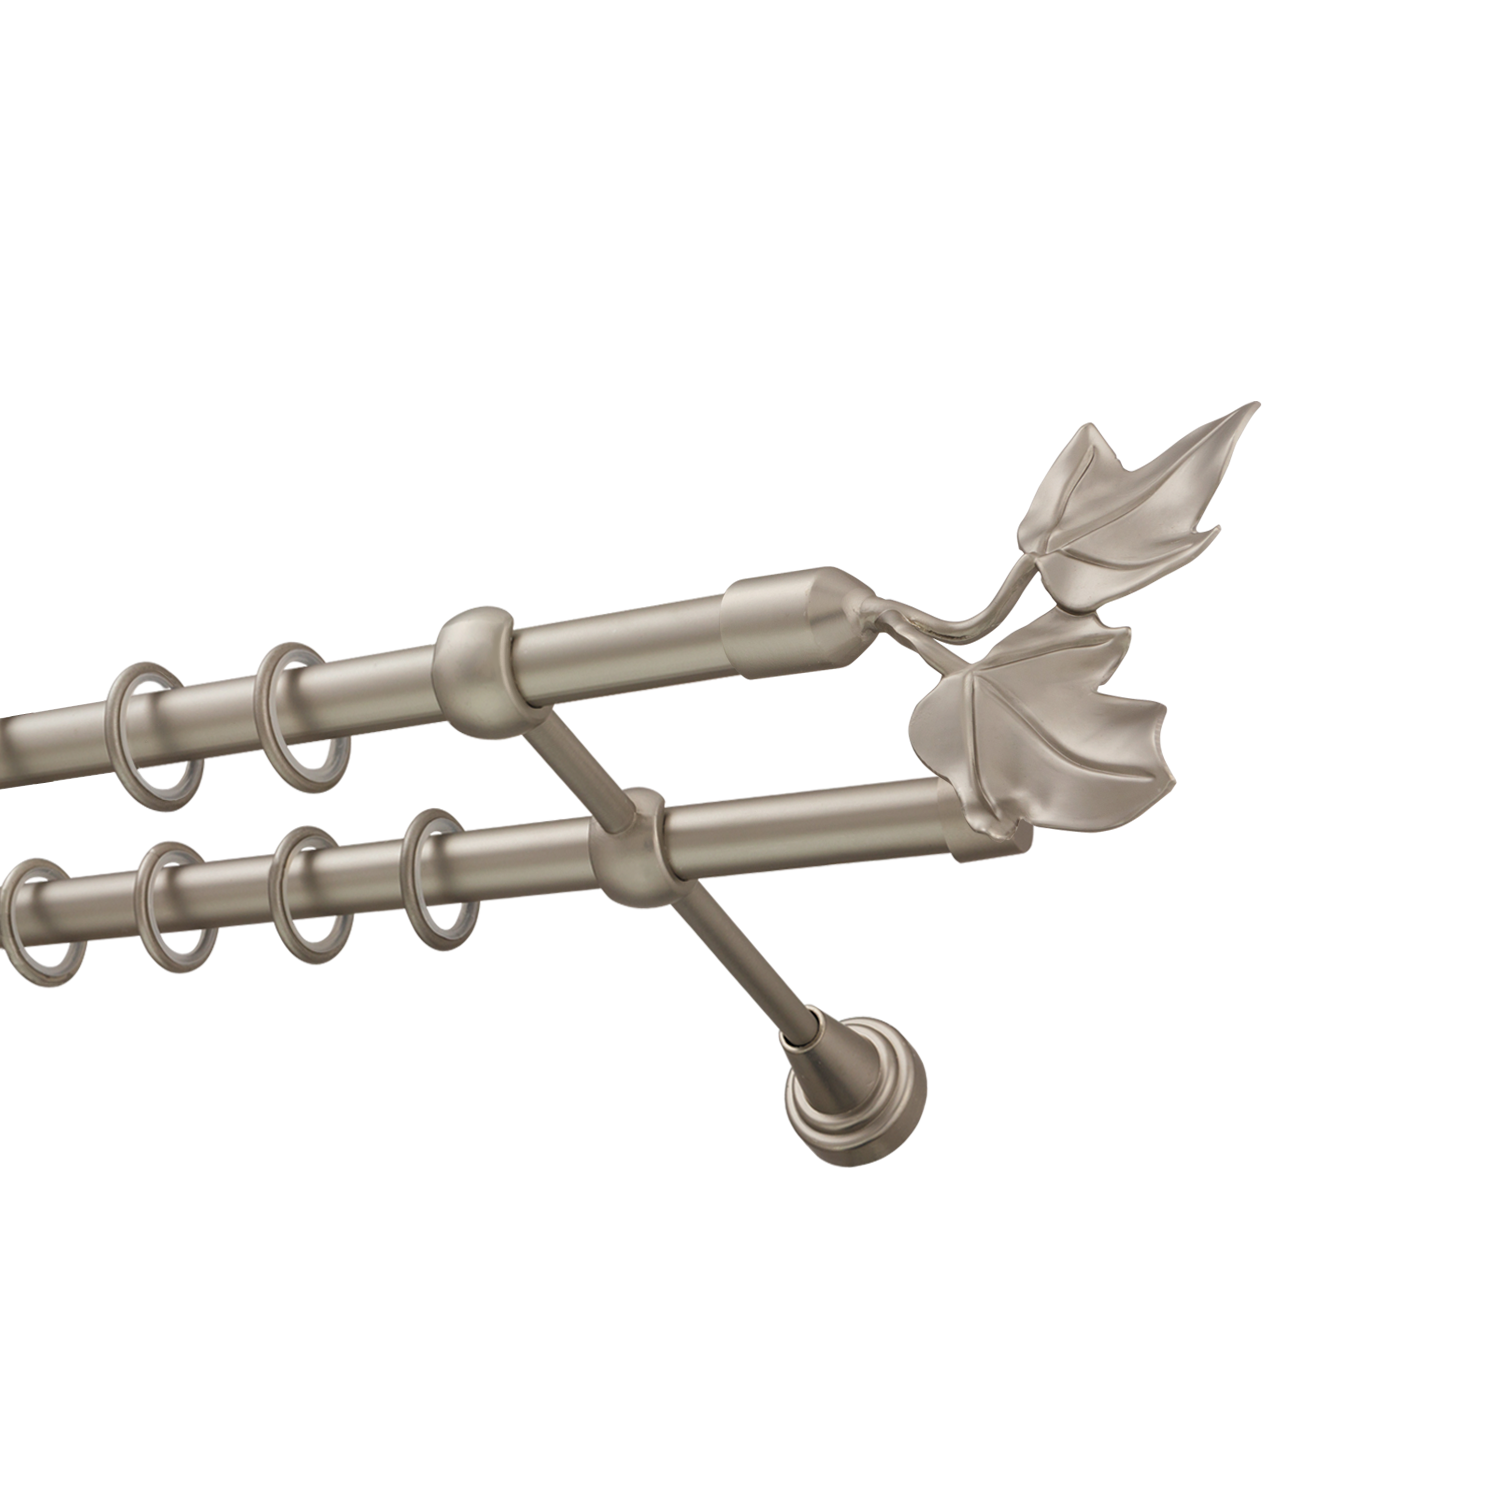 Металлический карниз для штор Листья, двухрядный 16/16 мм, сталь, гладкая штанга, длина 140 см - фото Wikidecor.ru